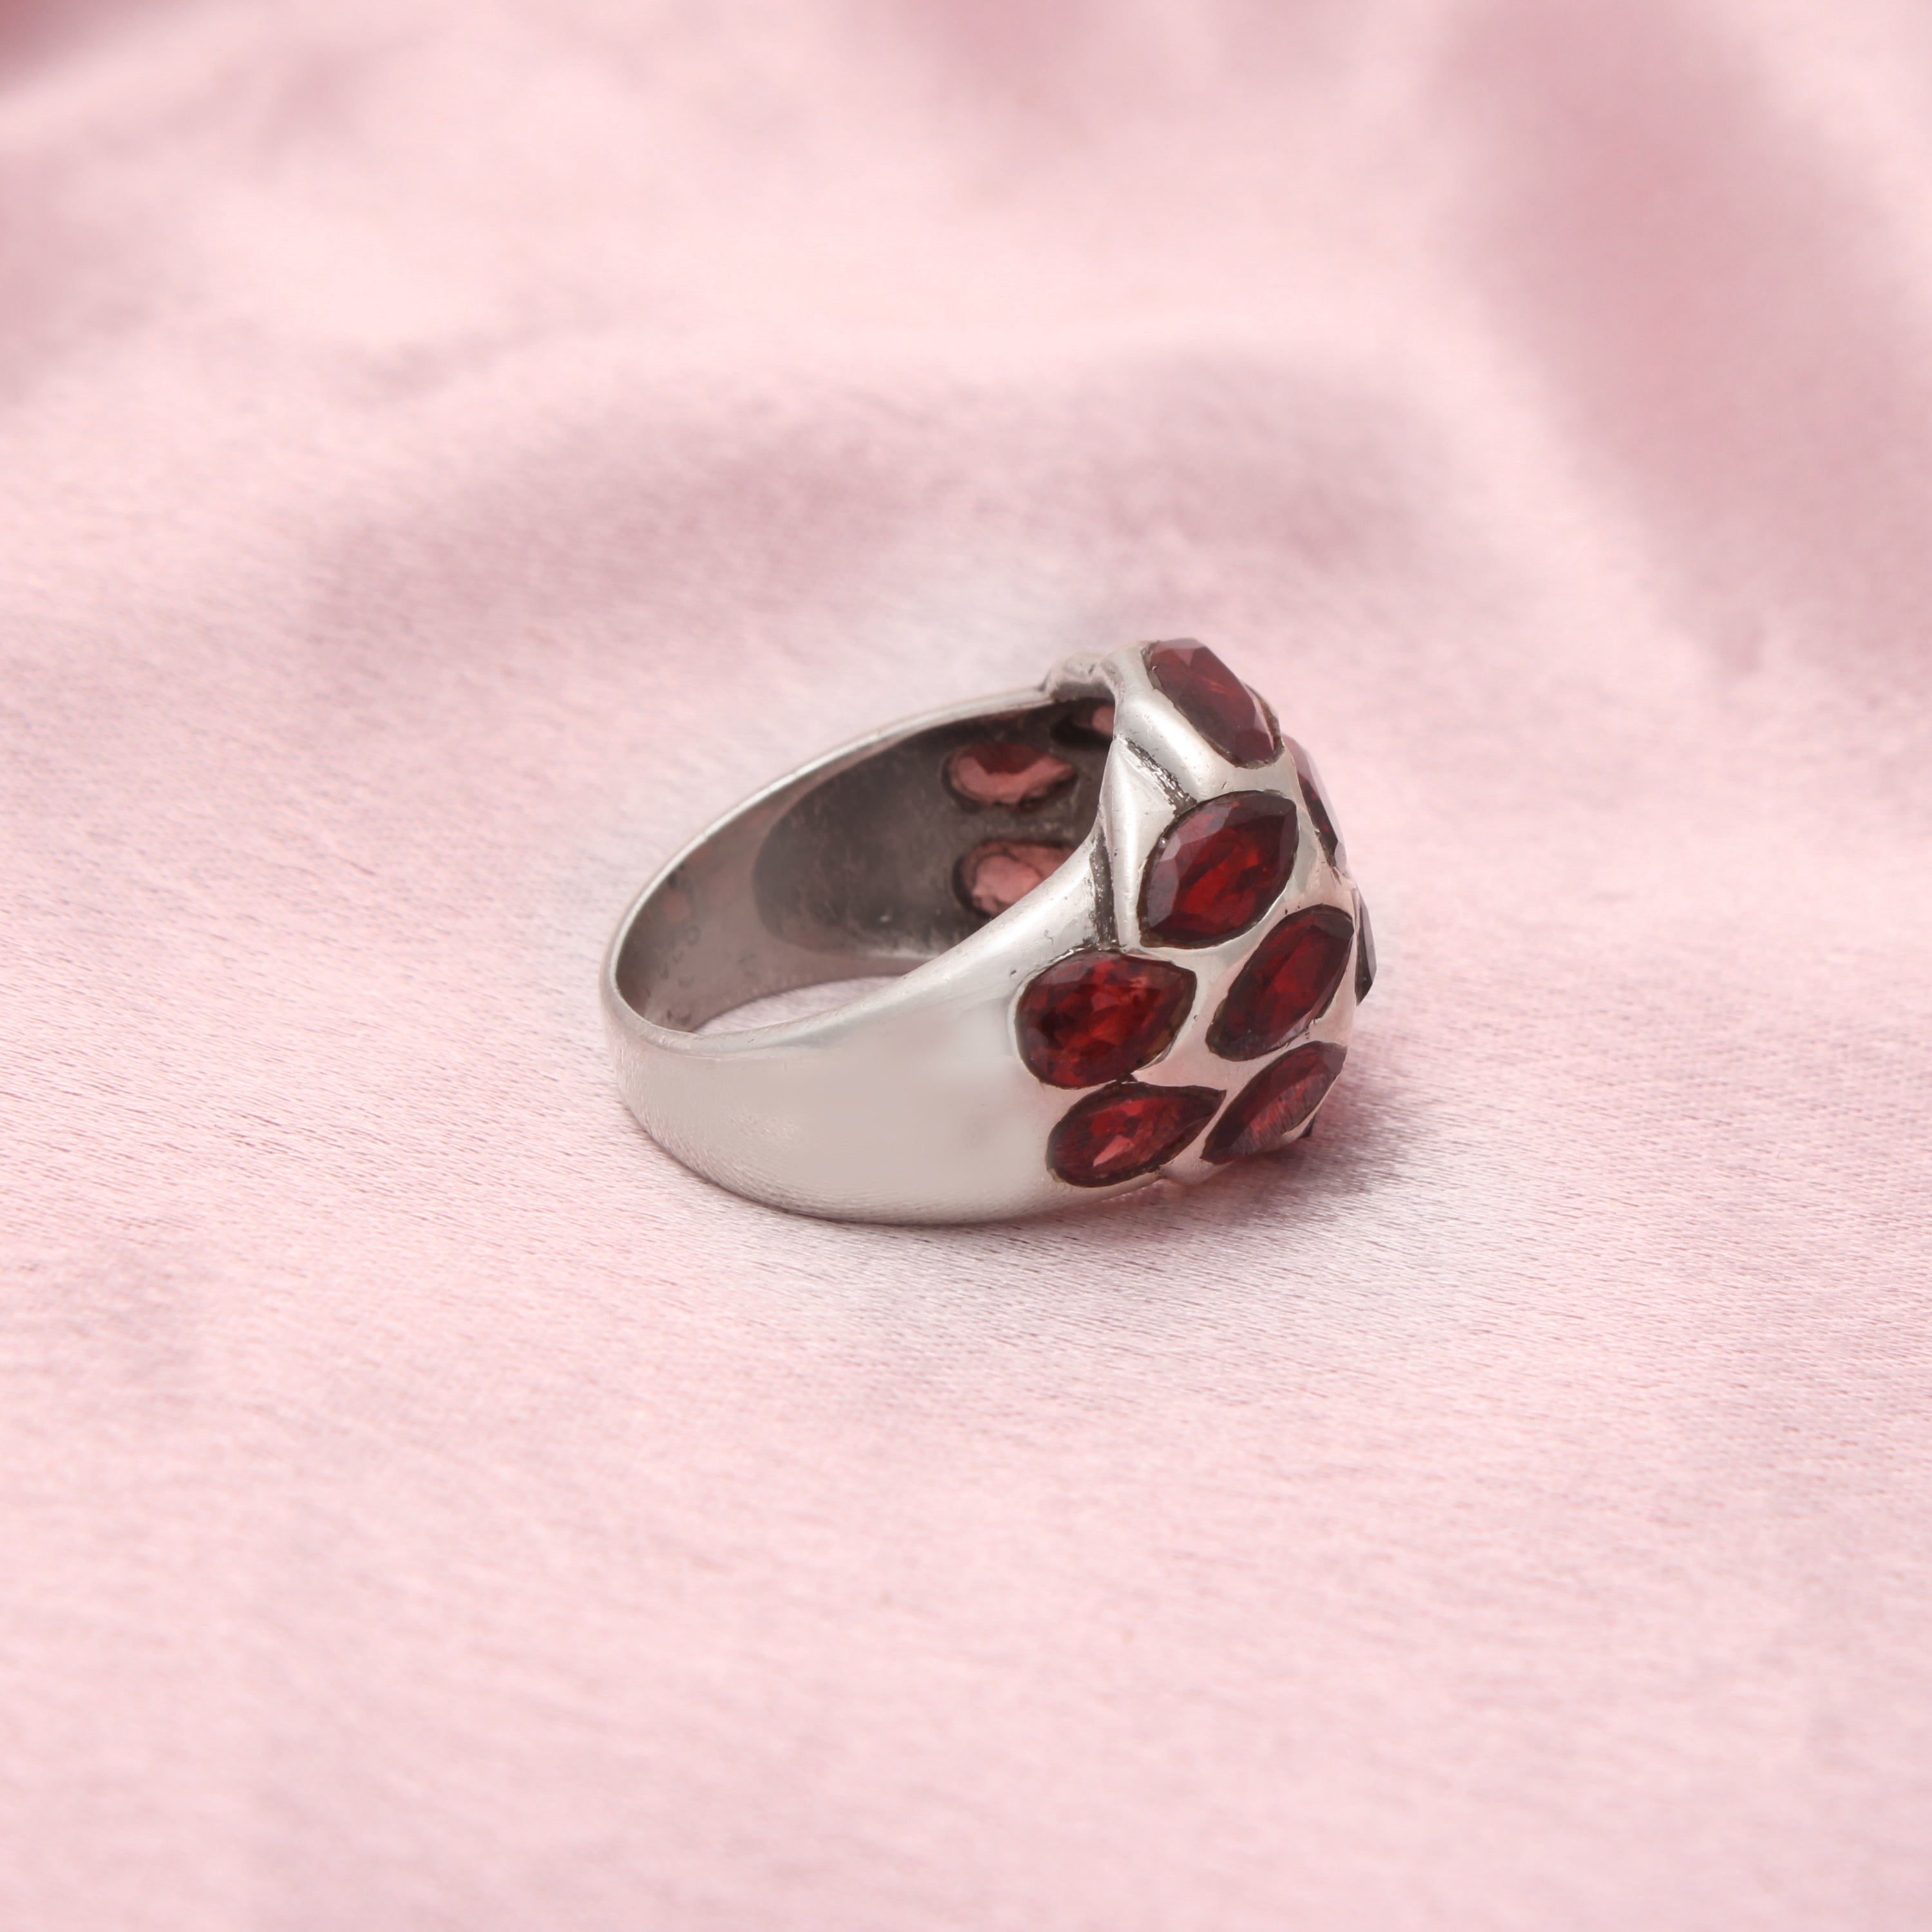 Redgem 925 Silver Ring for Women Natural Garnet Red 6 MM Heart